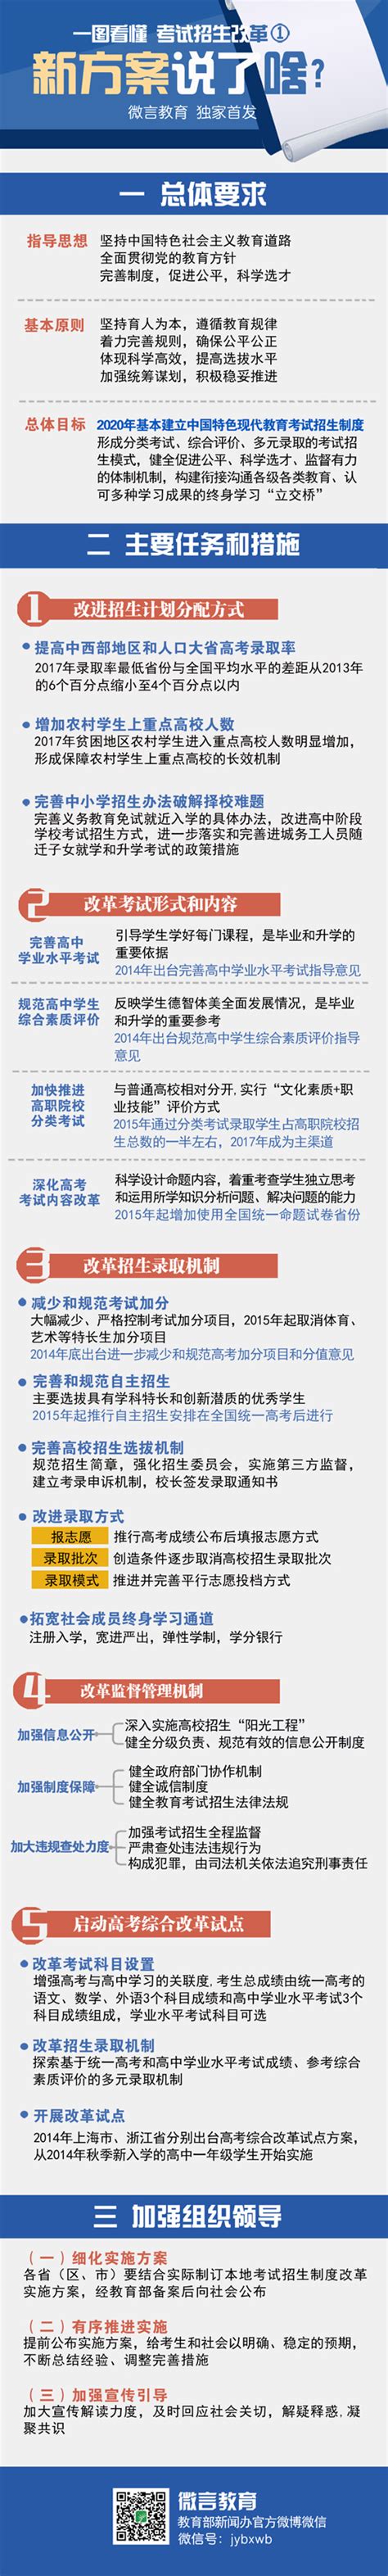 考试招生改革：新方案说了啥 - 中华人民共和国教育部政府门户网站